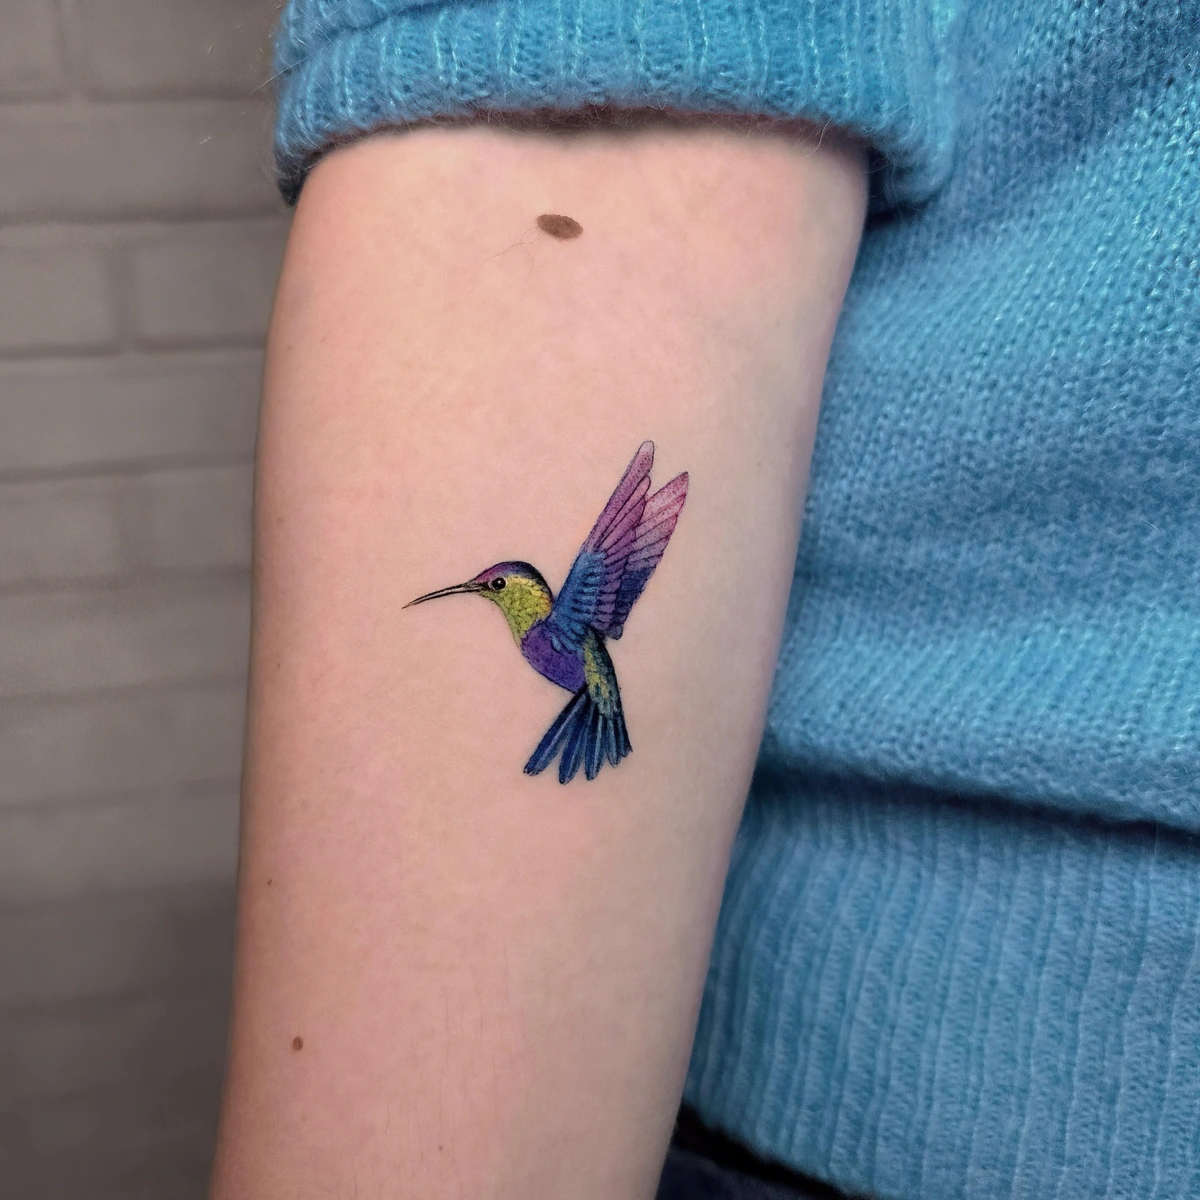 tatouage colibri colore sur bras femme pull bleu dessin sur peau